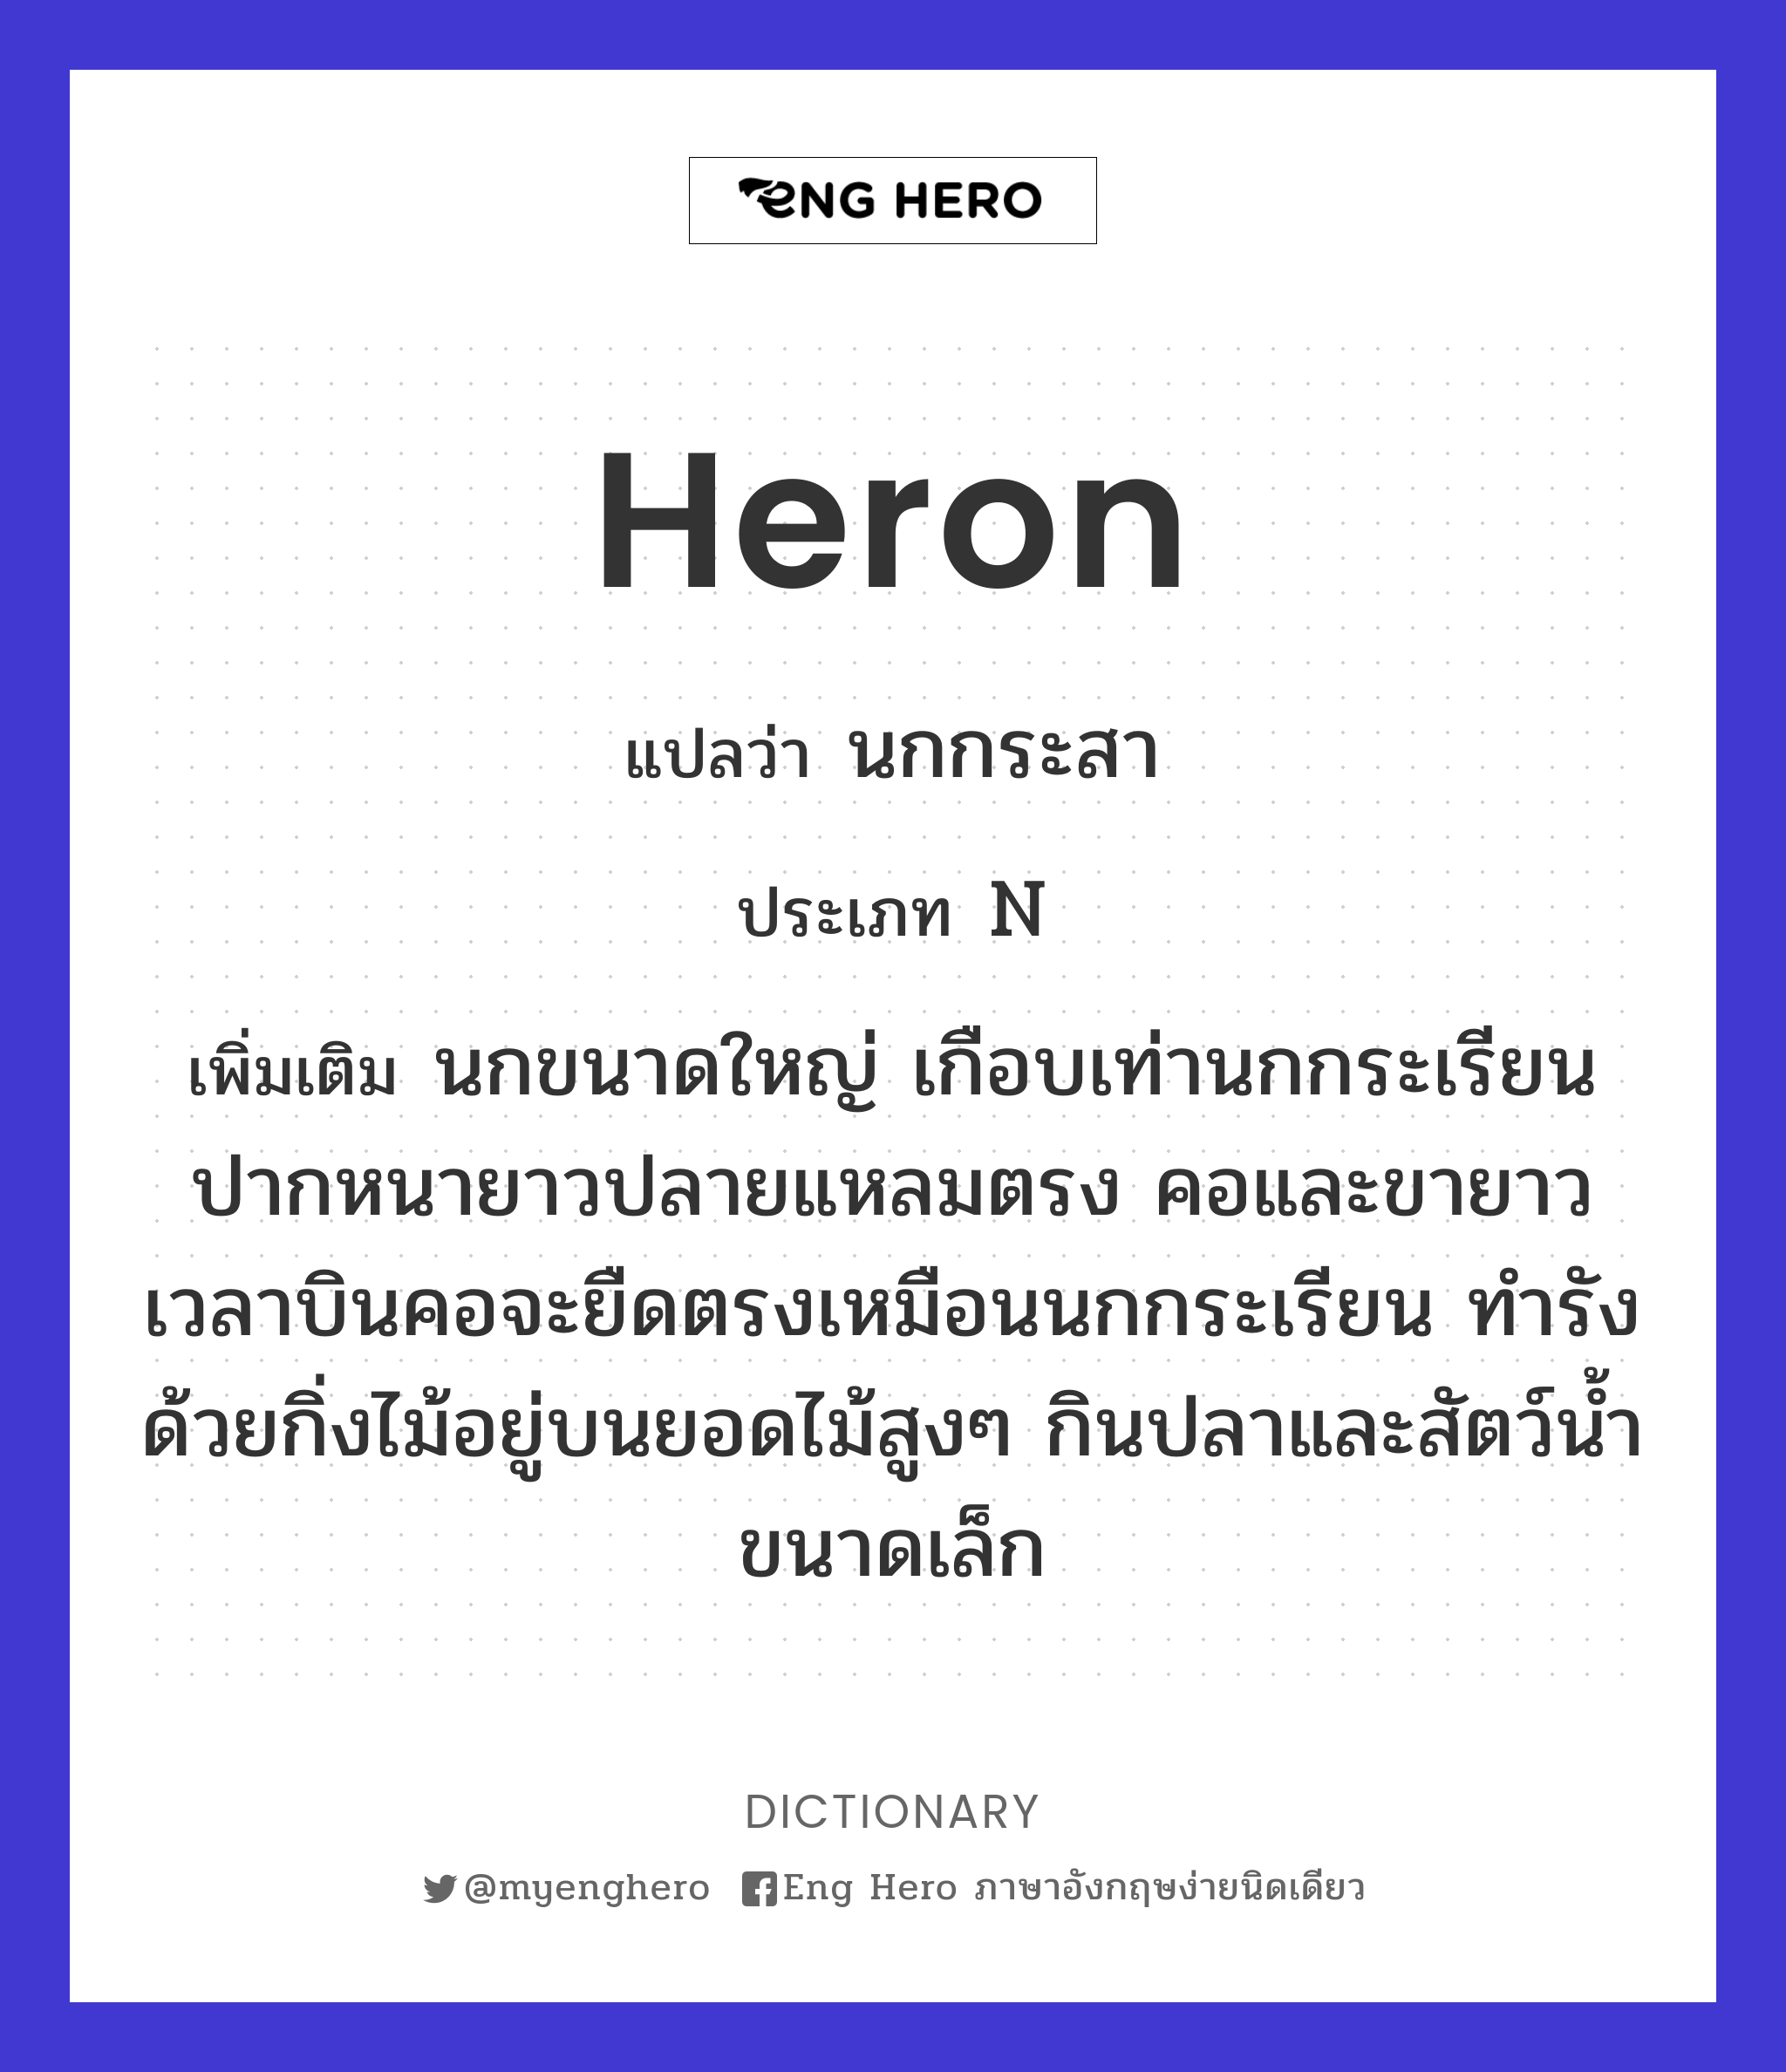 heron